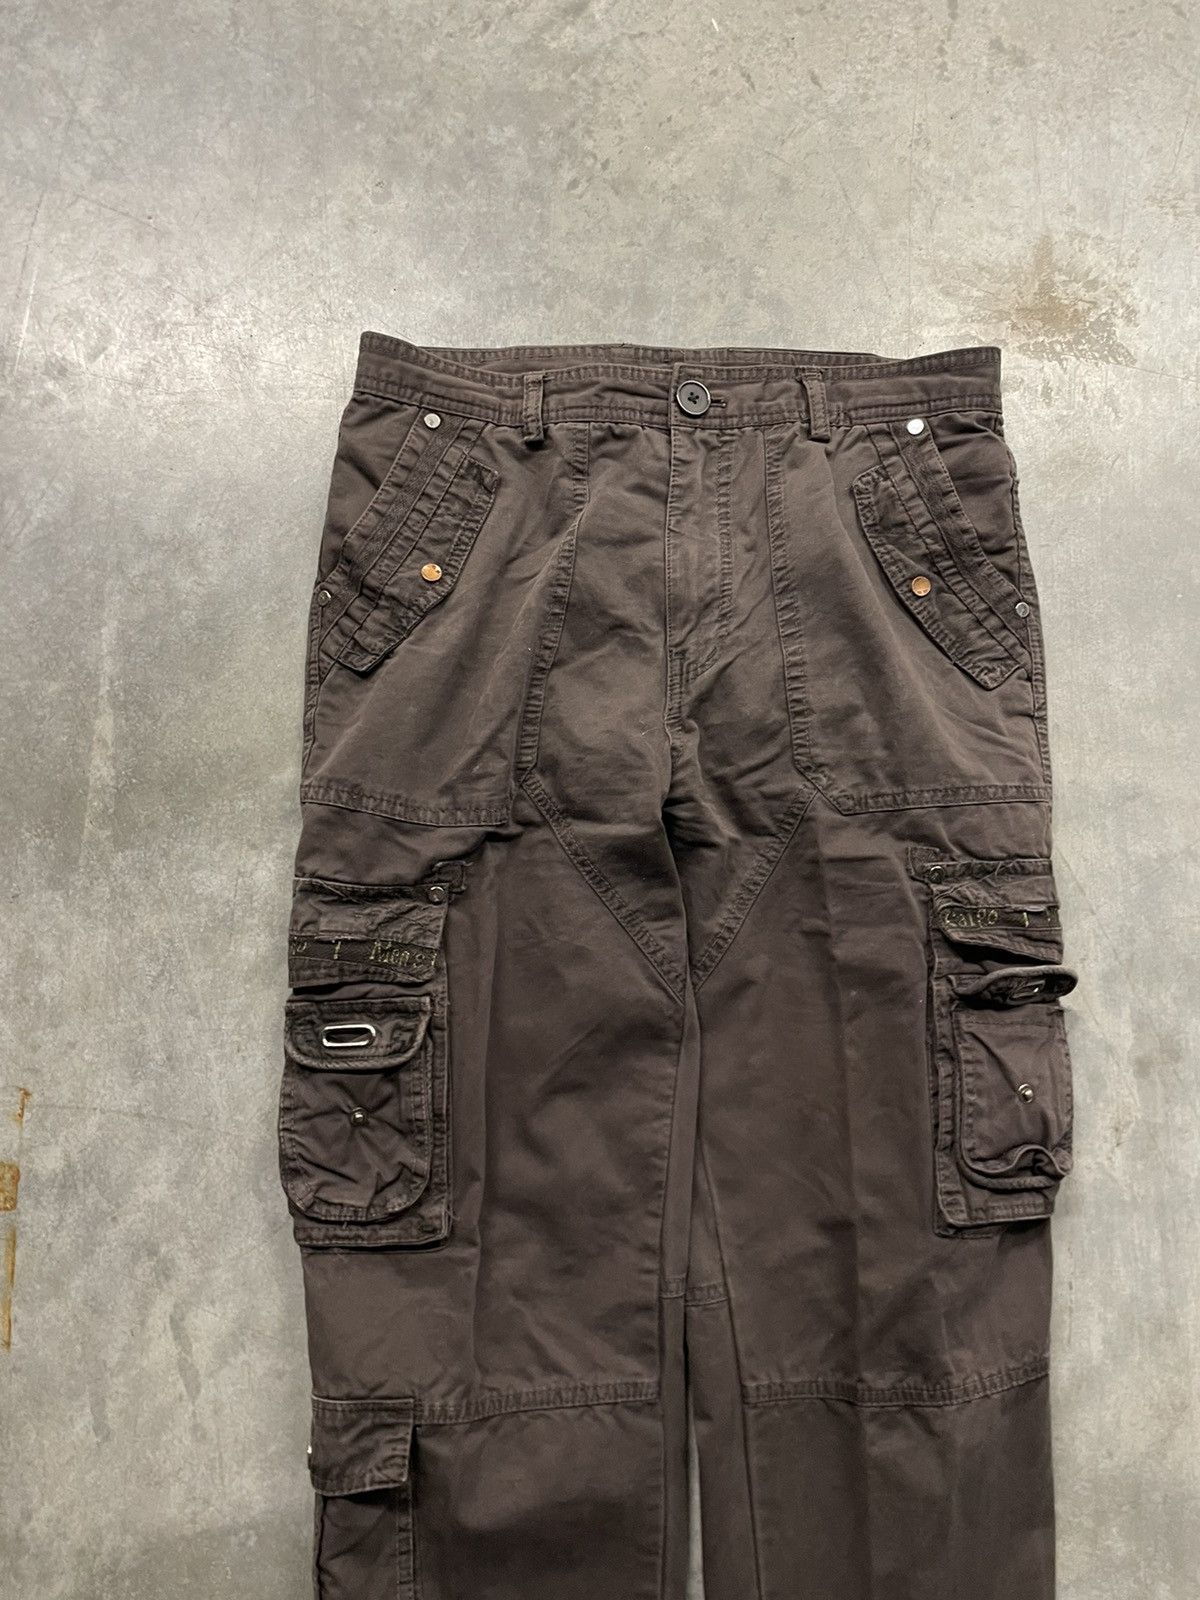 Vintage Vintage Y2K Tactical Cargo Pants (32x31) Size US 32 / EU 48 - 2 Preview